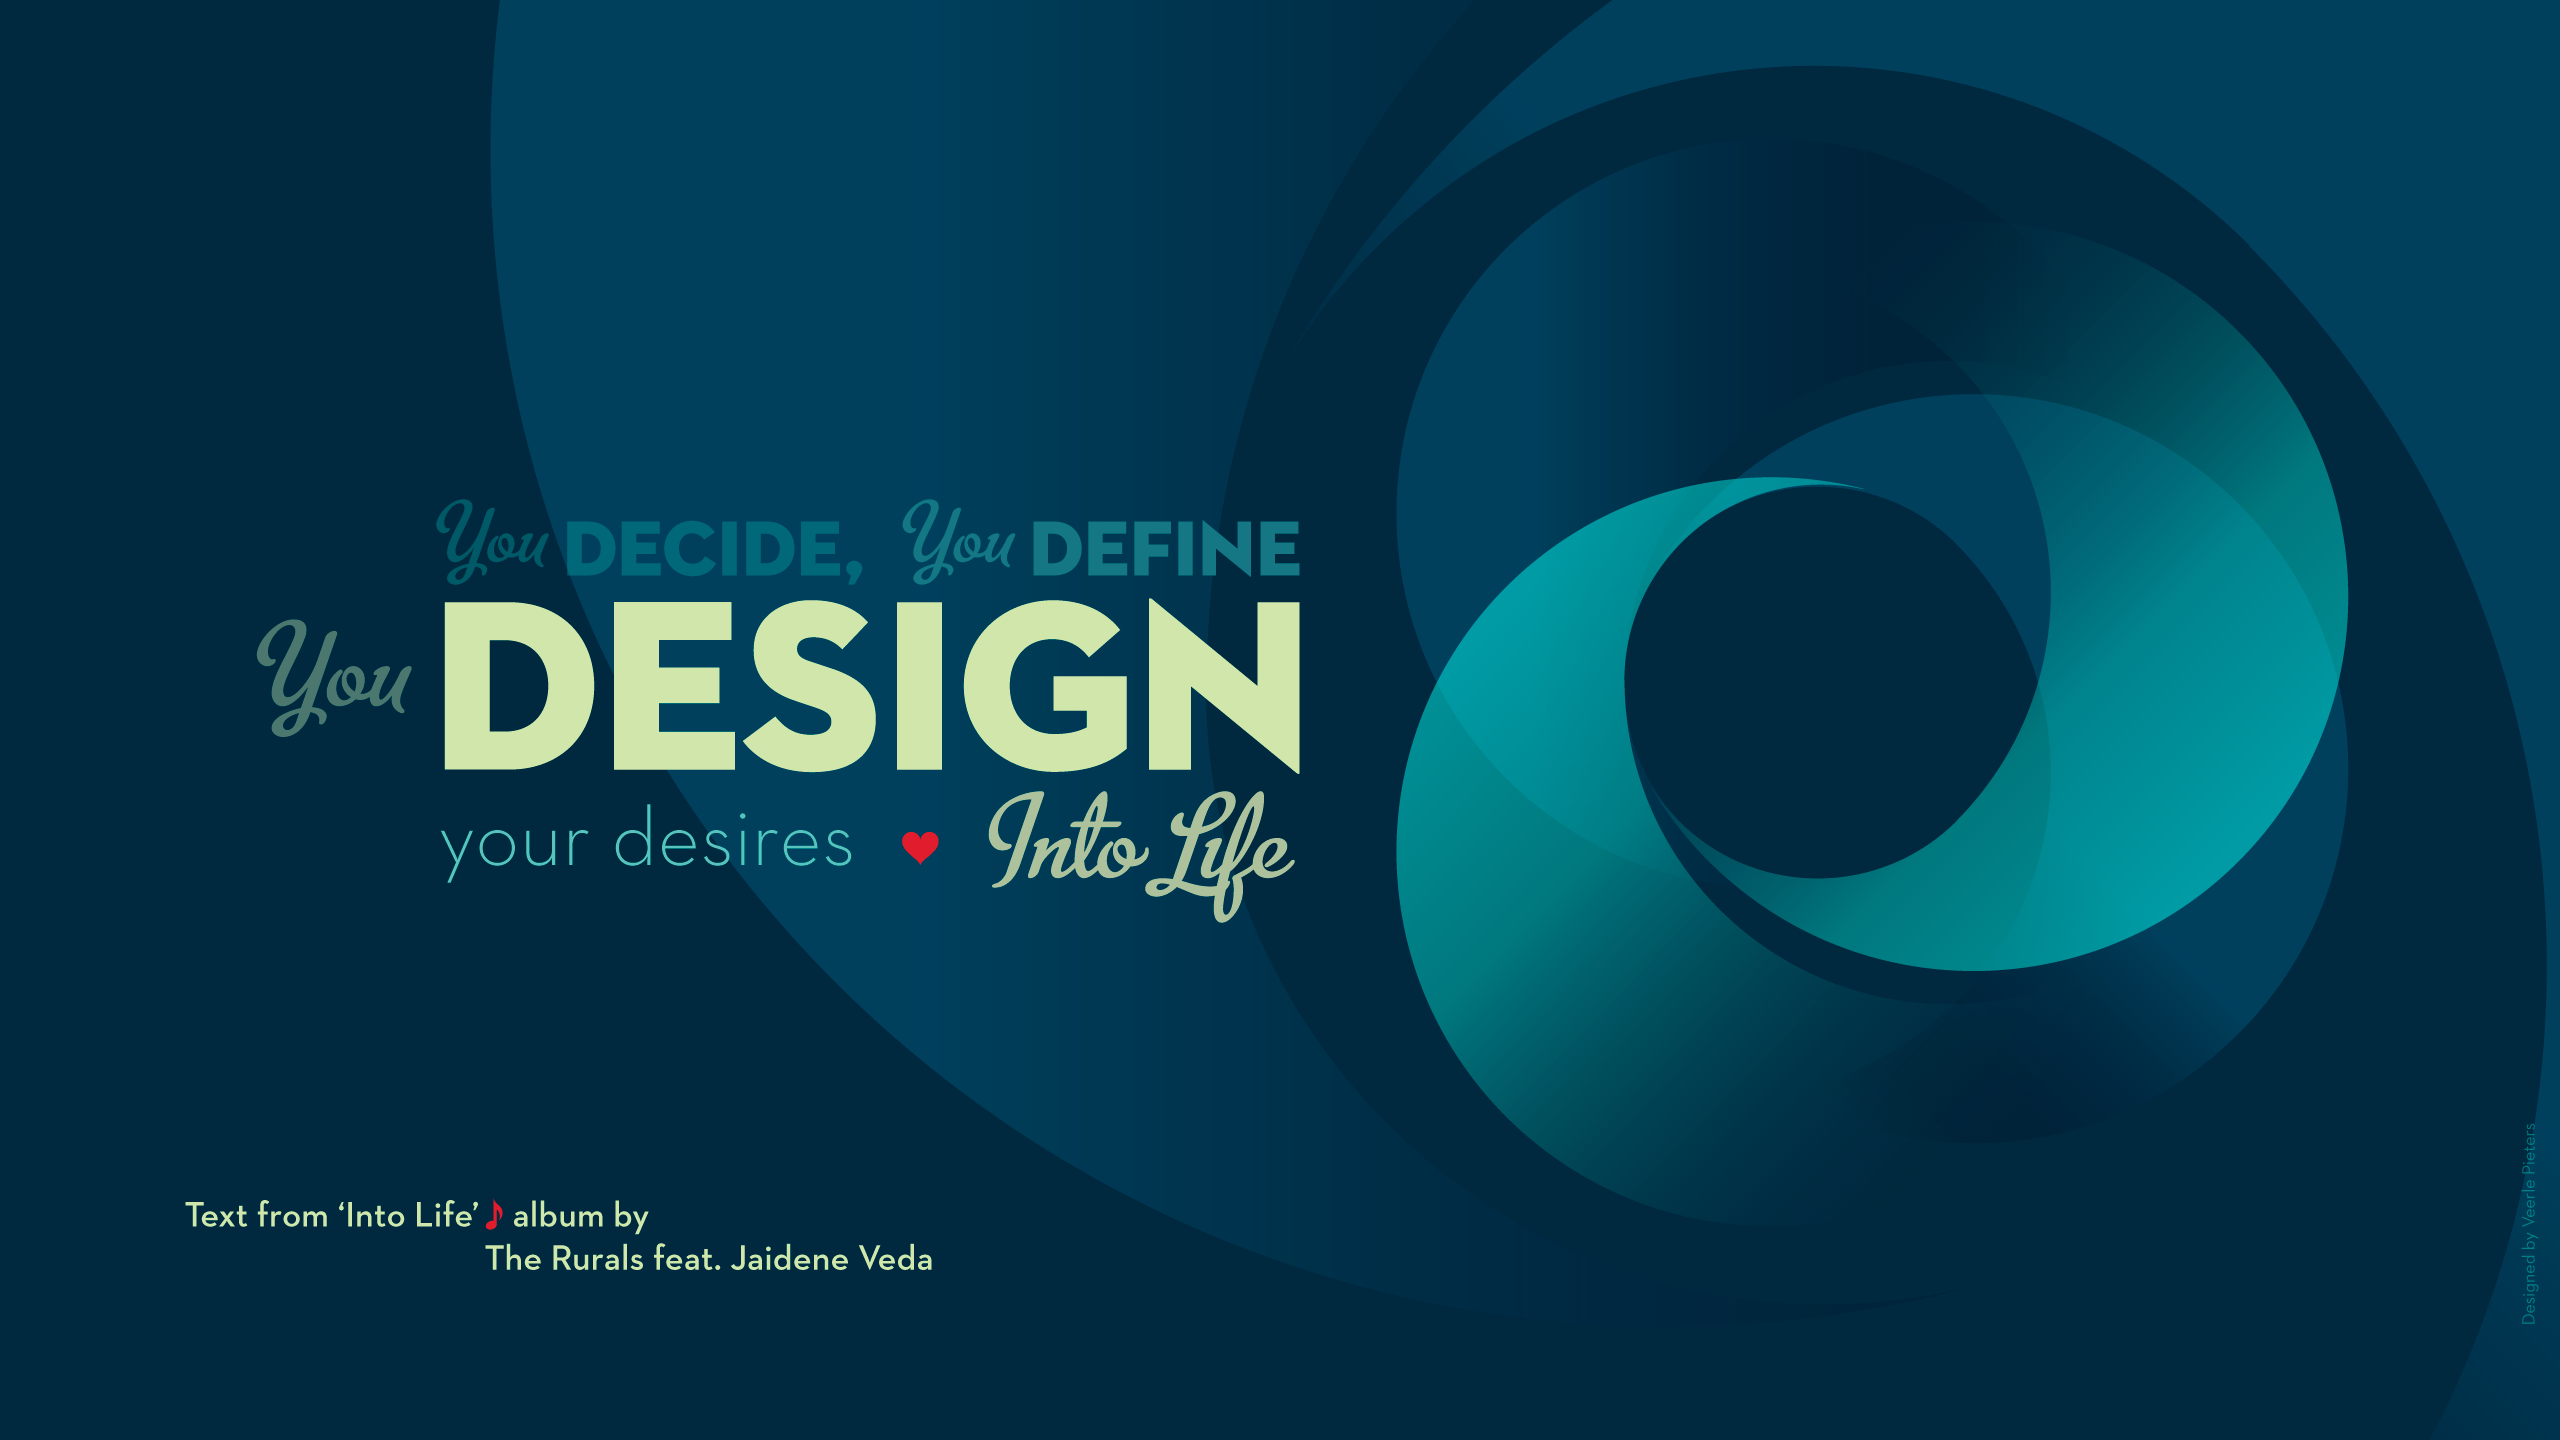 Into Life wallpaper design Veerles blog 30